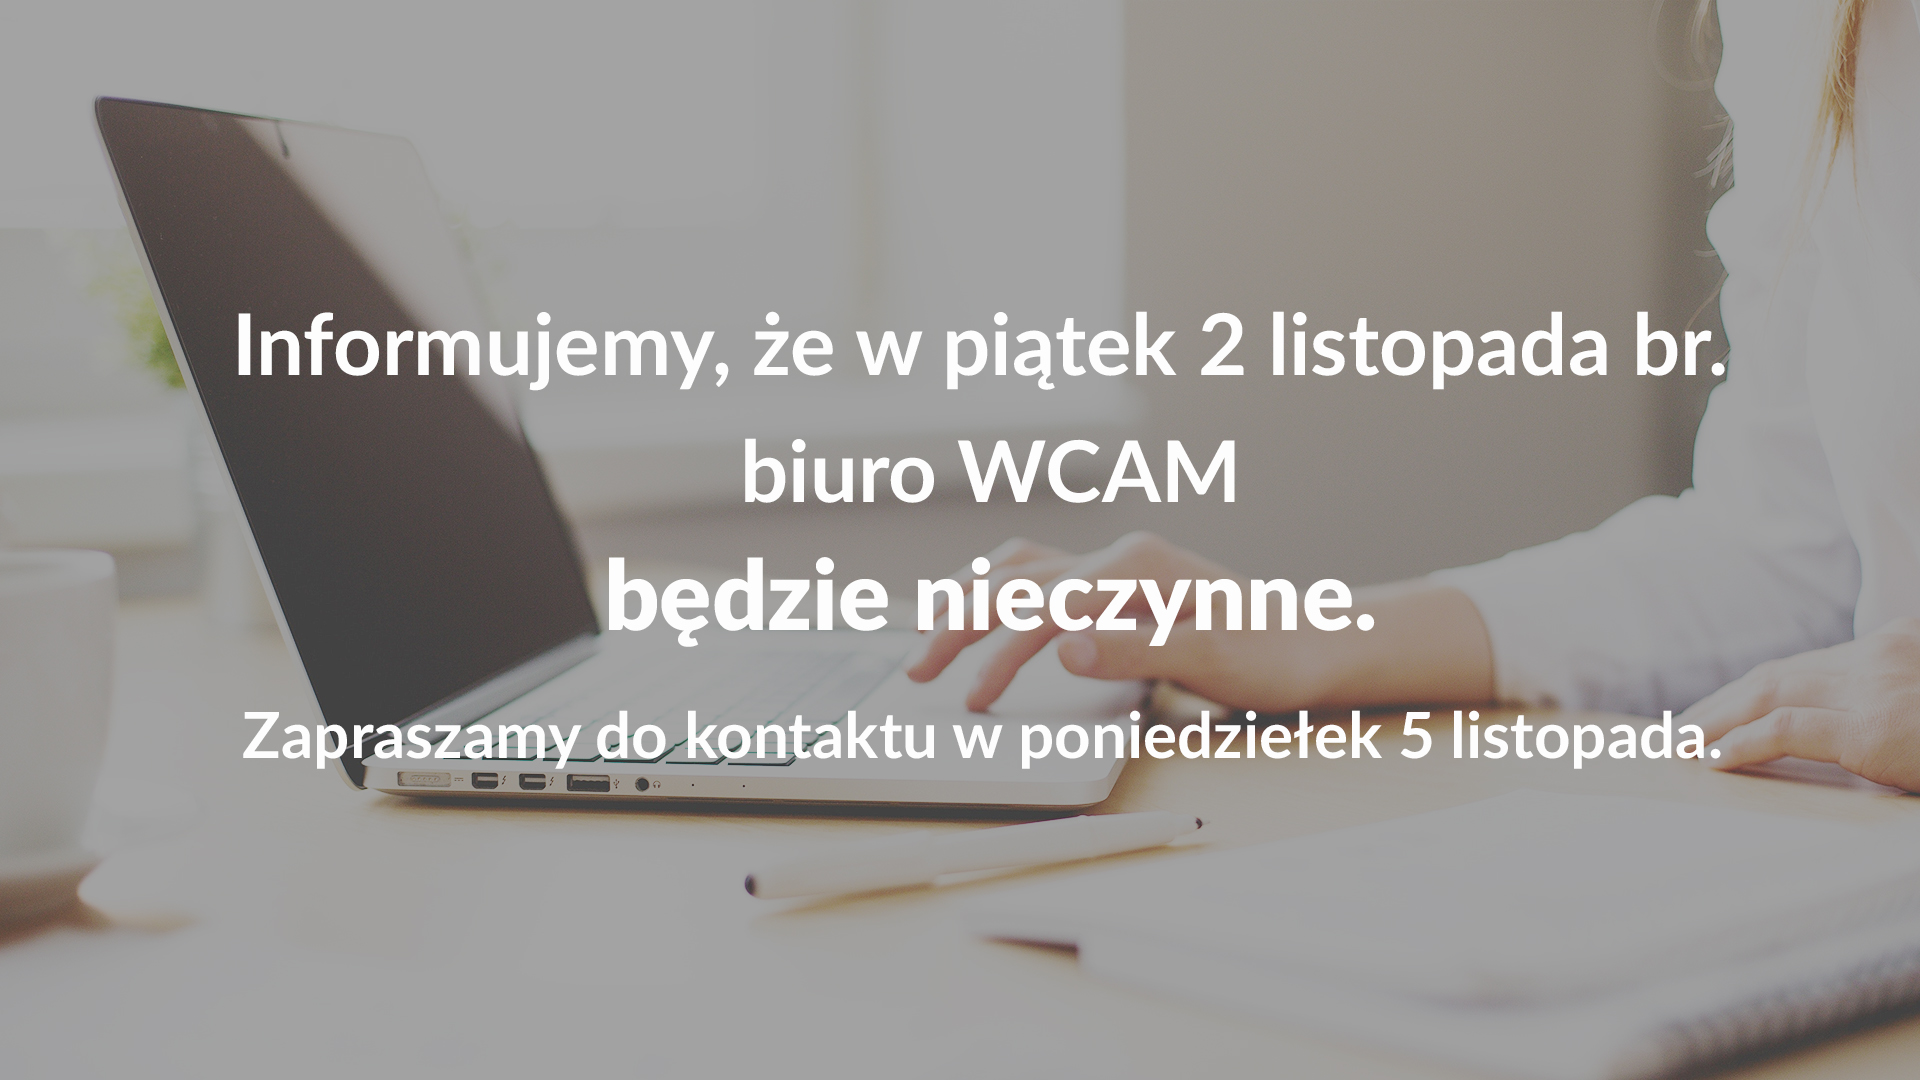 W piątek 2 listopada biuro WCAM jest zamknięte